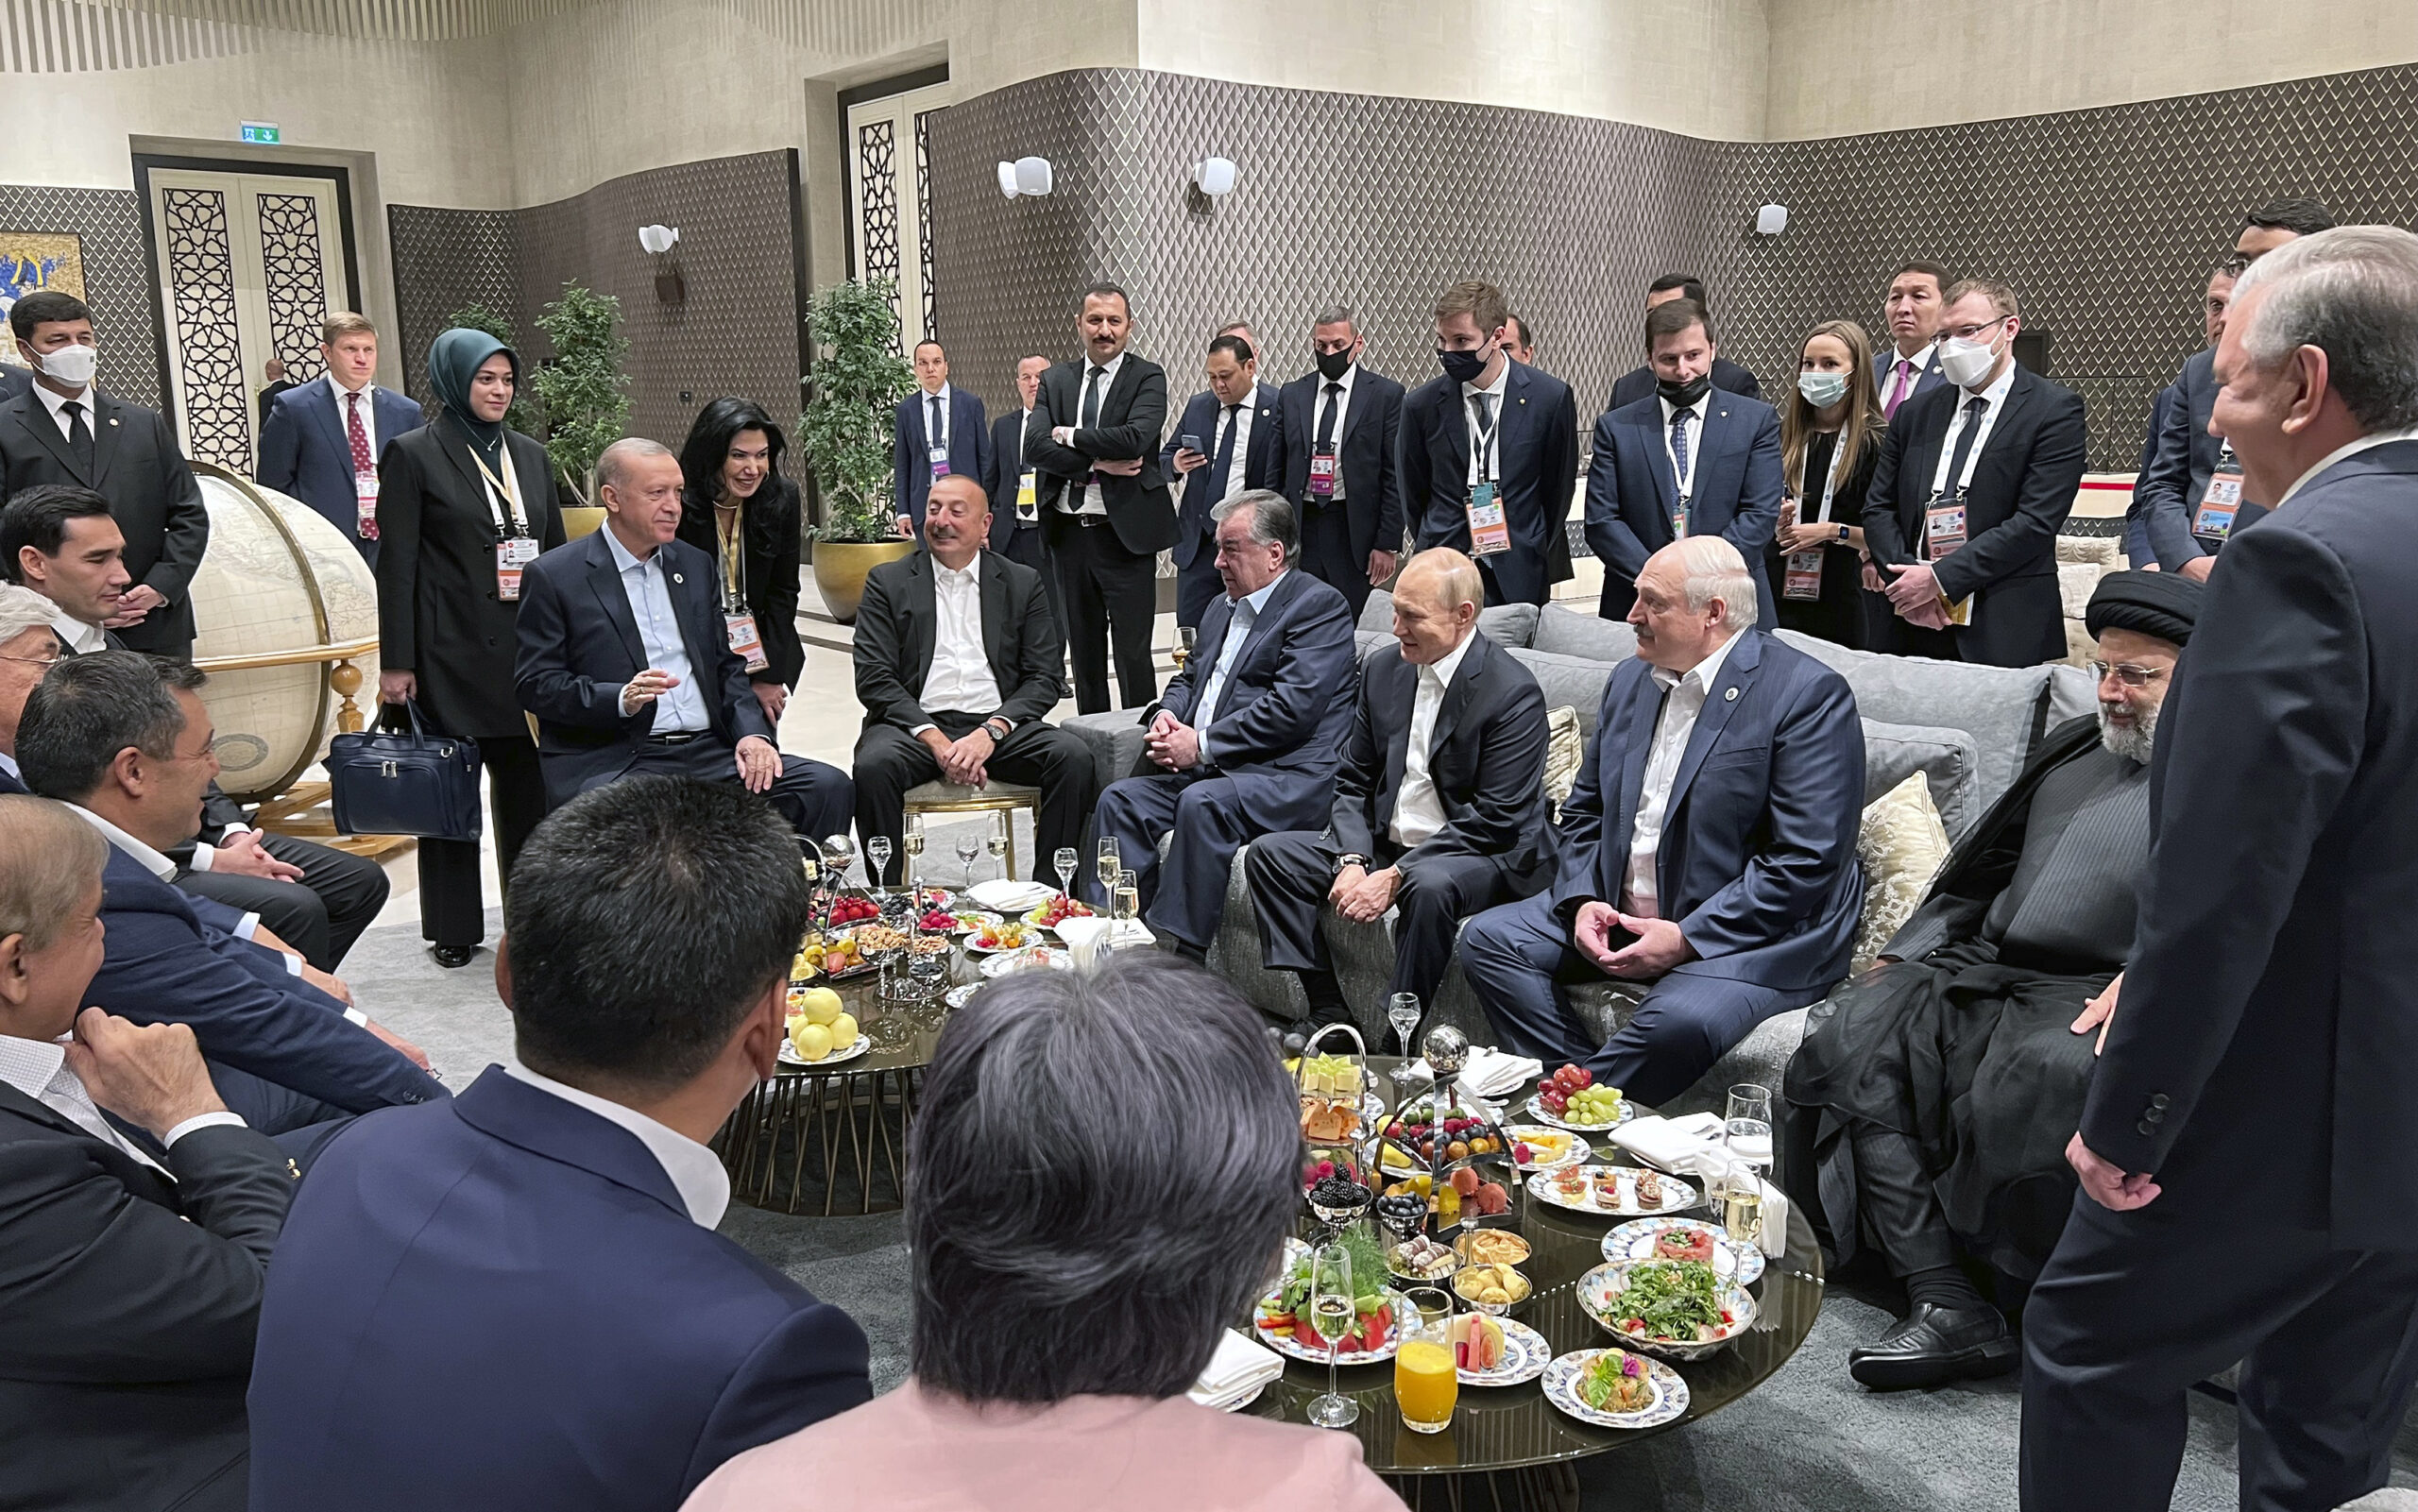 Recep Tayyip Erdogan (auf dem Stuhl sitzend, l.), Präsident der Türkei, im Gespräch mit Ilham Aliyev (sitzend, 5.v.r), Präsident von Aserbaidschan, sowie SEmomalij Rahmon (sitzend, 4.v.r), Präsident von Tadschikistan, Wladimir Putin (sitzend, 3.v.r), Präsident von Russland, Alexander Lukaschenko (sitzend, 2.v.r), Präsident von Belarus und Ebrahim Raisi (sitzend, r), Präsident des Iran, beim Gipfel der Shanghaier Organisation für Zusammenarbeit (SCO).